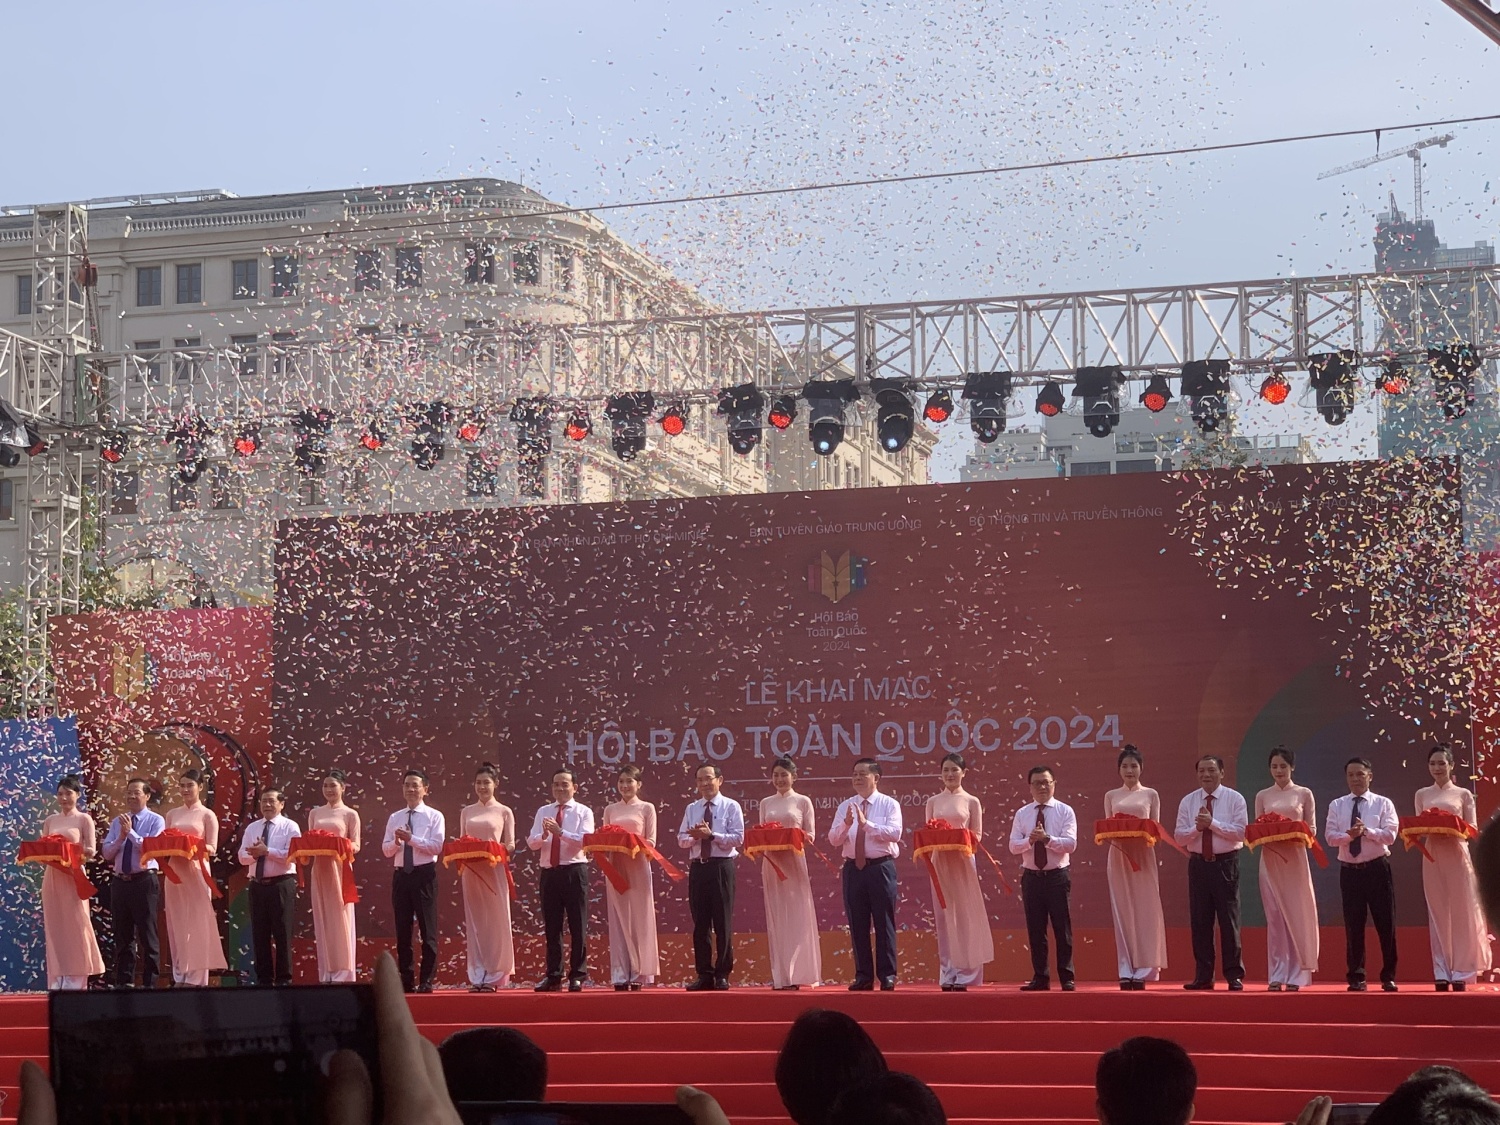 Tỉnh Đắk Lắk tham gia trưng bày sản phẩm tại Hội báo toàn quốc năm 2024